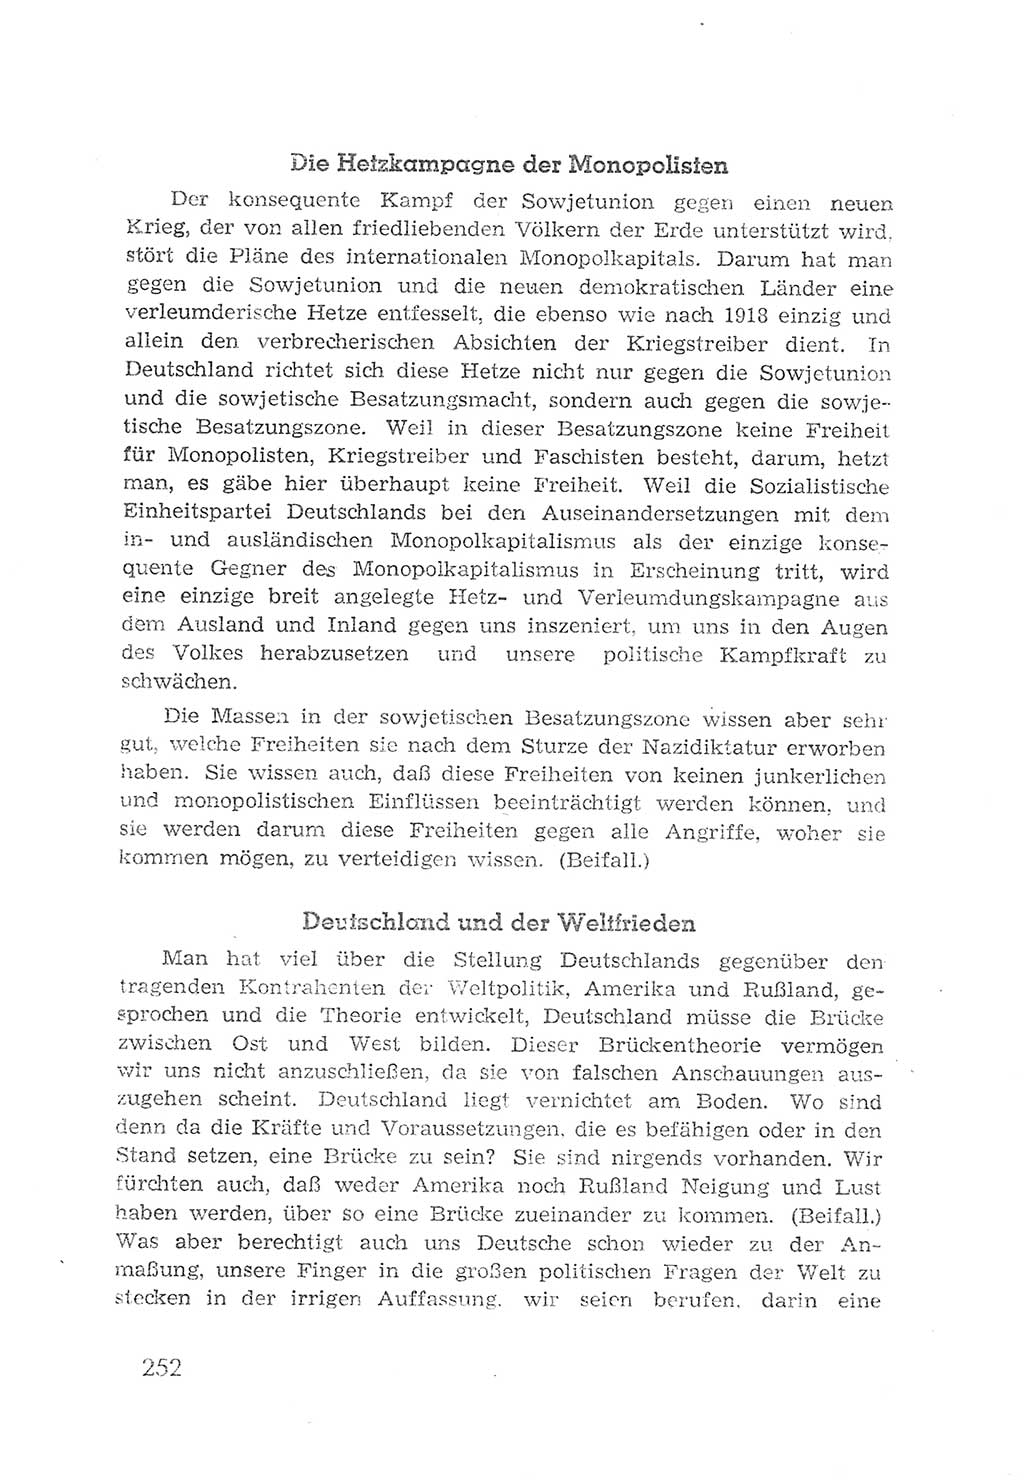 Protokoll der Verhandlungen des 2. Parteitages der Sozialistischen Einheitspartei Deutschlands (SED) [Sowjetische Besatzungszone (SBZ) Deutschlands] 1947, Seite 252 (Prot. Verh. 2. PT SED SBZ Dtl. 1947, S. 252)